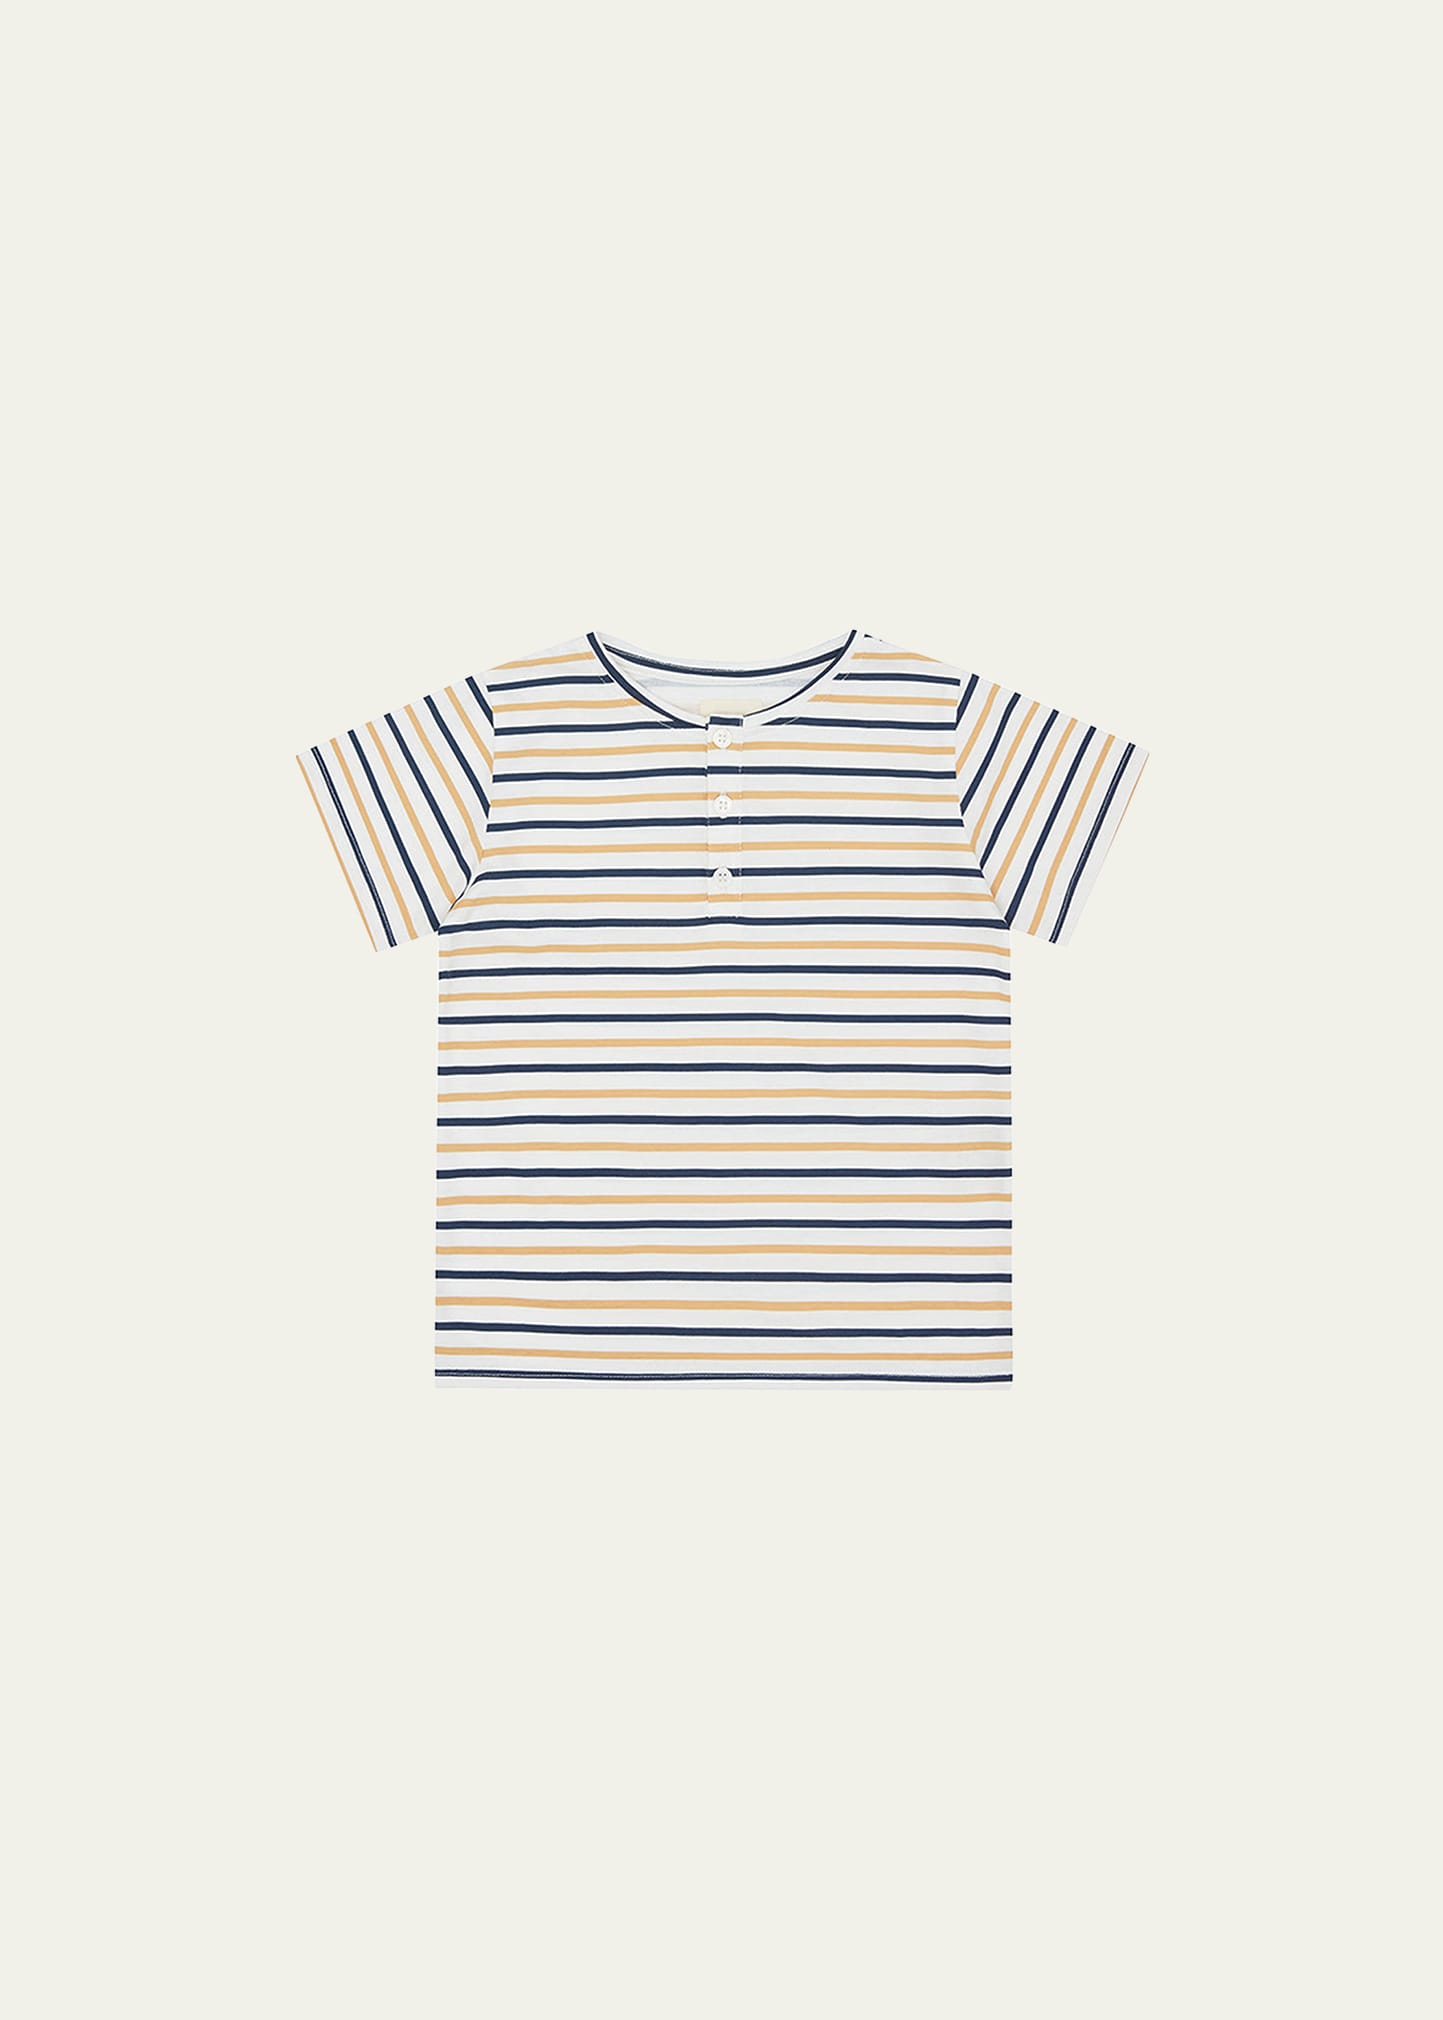 Vild - House Of Little Kid's Cotton Henley Shirt In Mustard/navy Stri